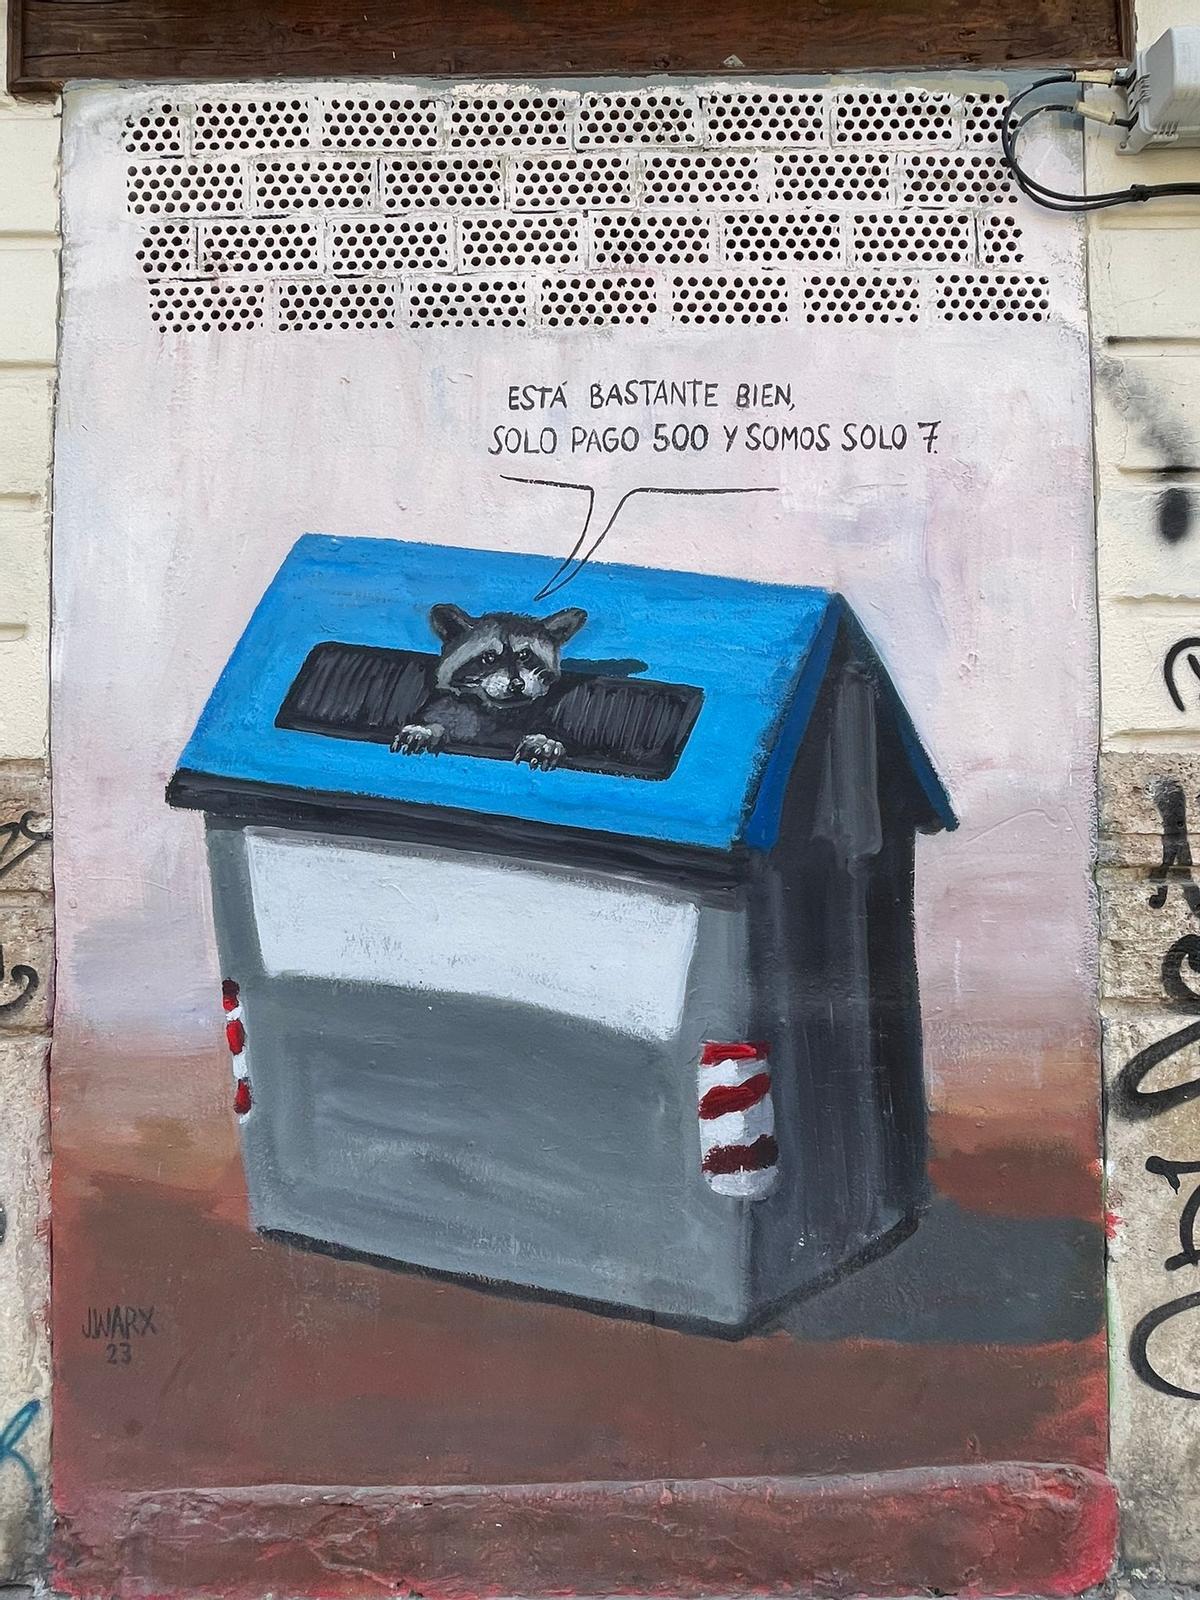 El grafitero J.Warx denuncia la situación de la vivienda en València con un mural